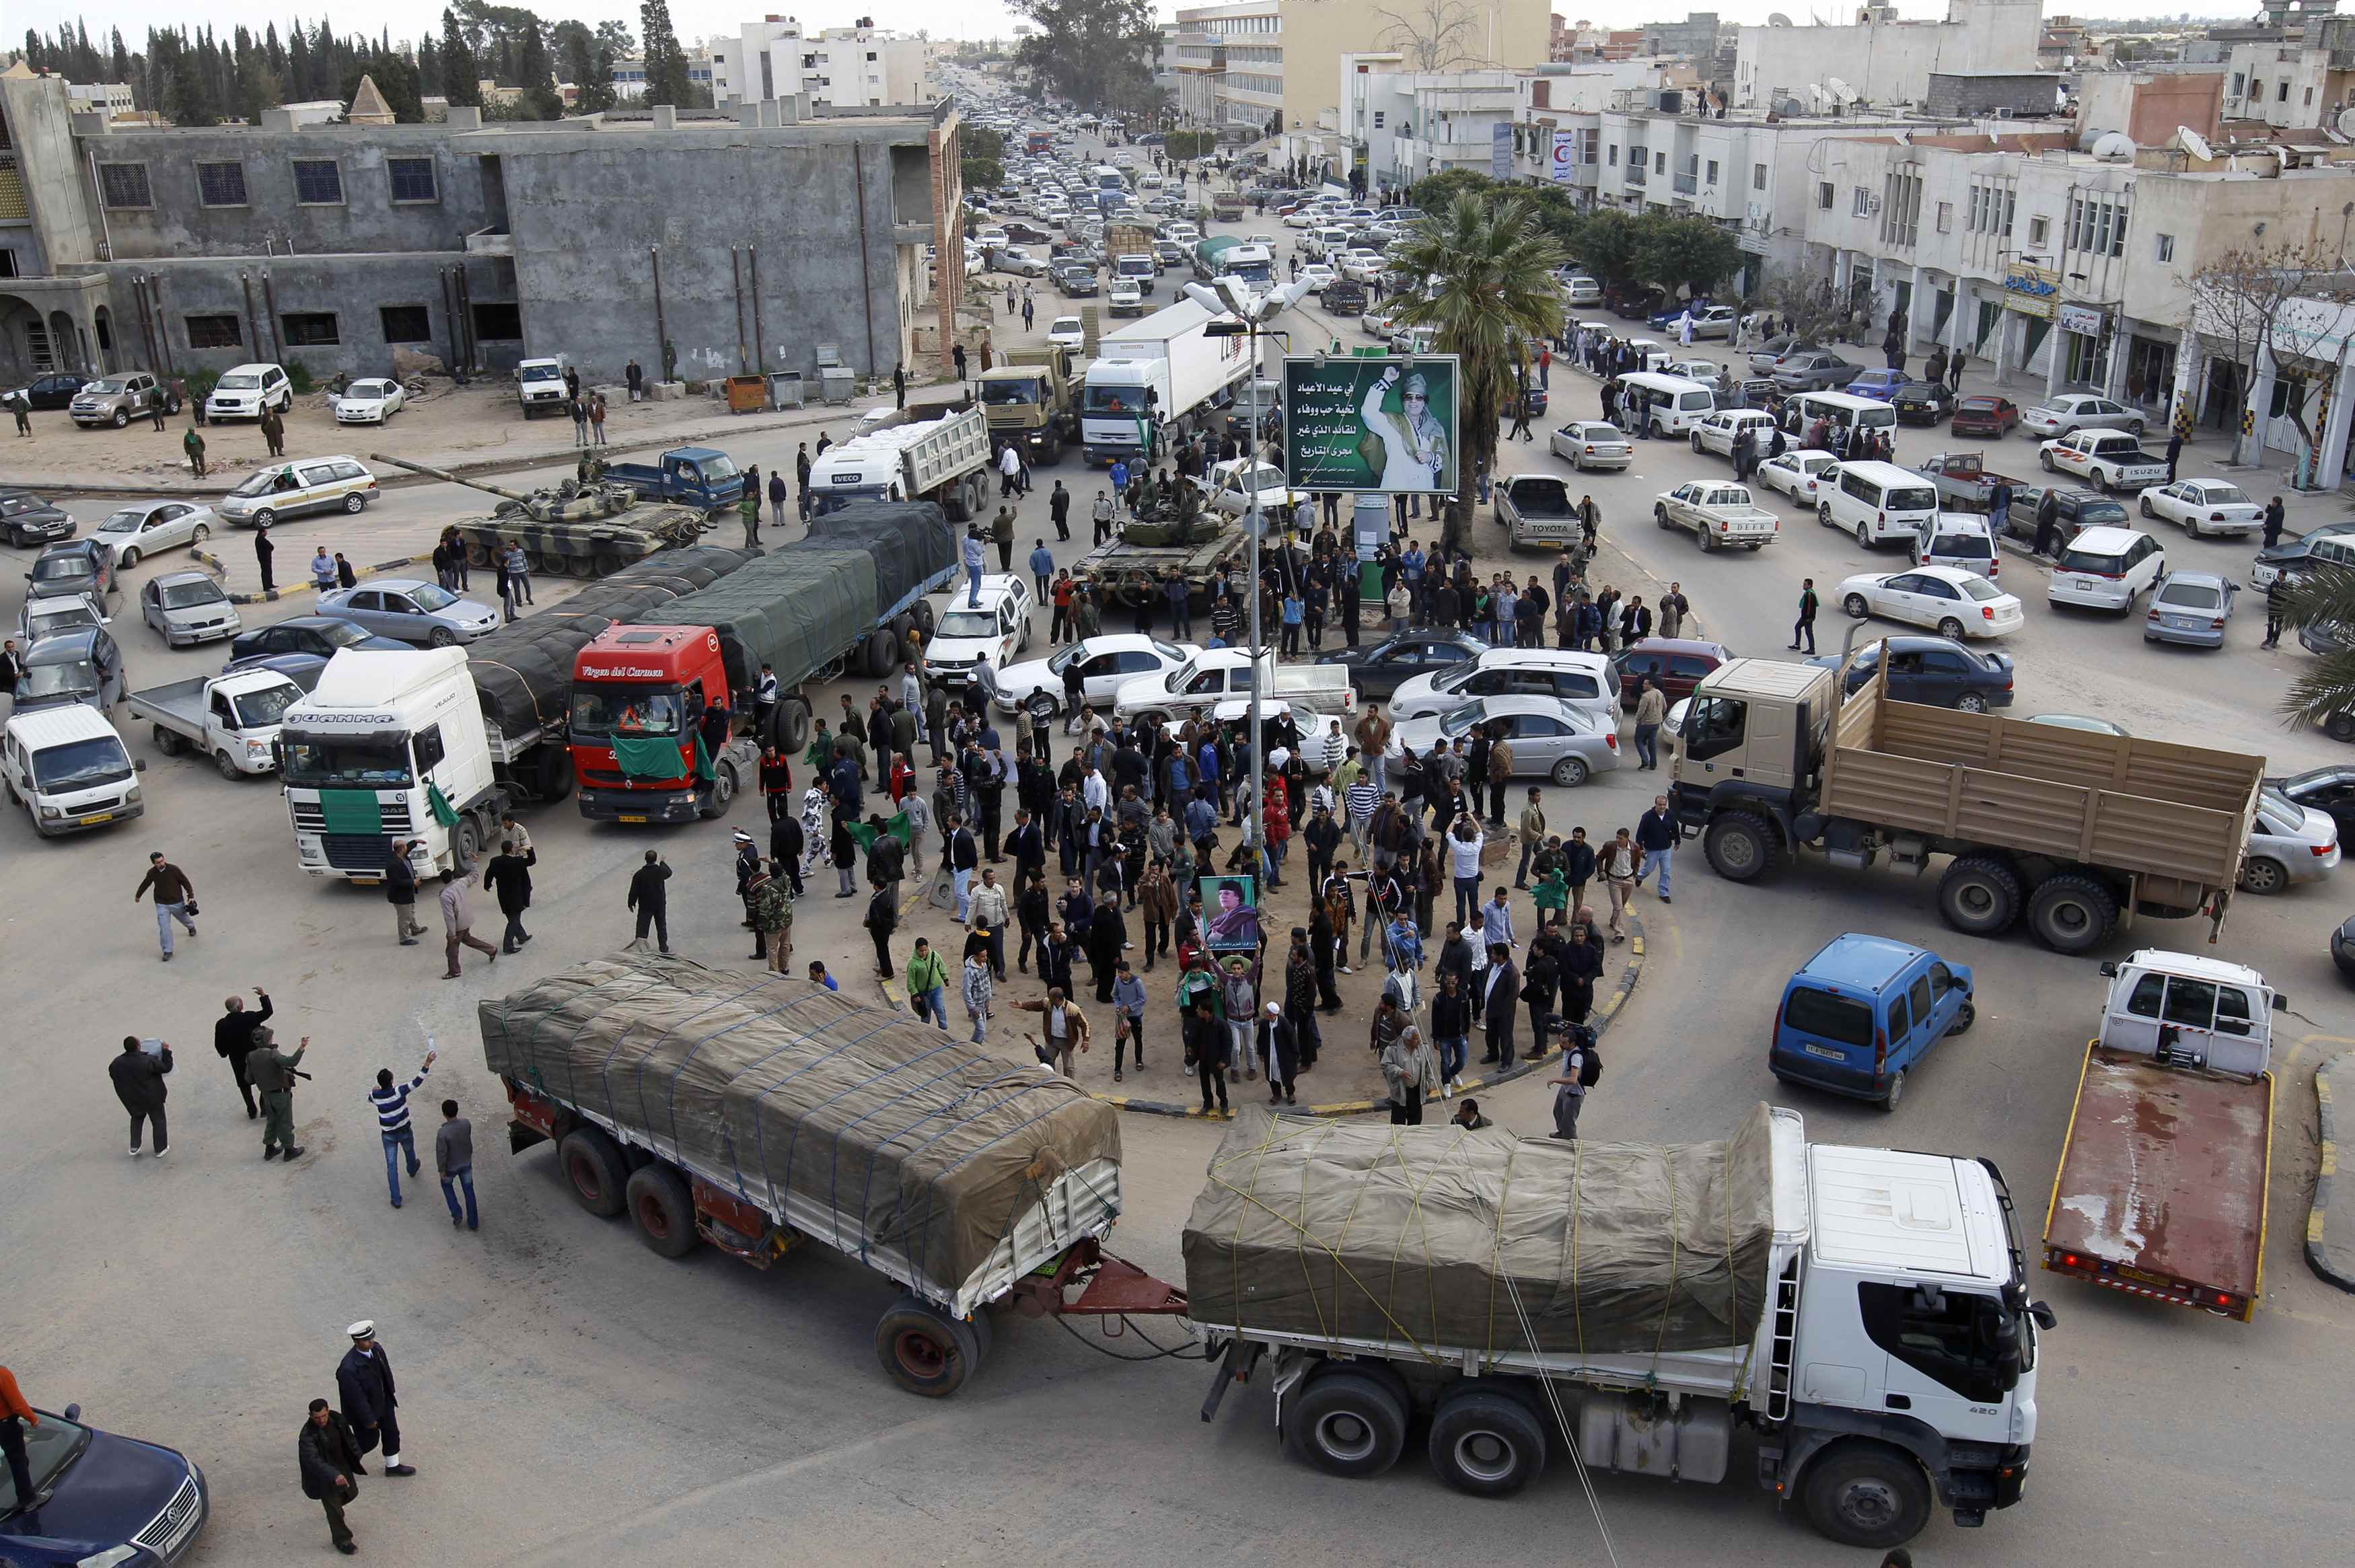 18 φορτηγά με ανθρωπιστική βοήθεια που στέλνει ο Καντάφι στη Βεγγάζη προκάλεσαν σχόλια - ΦΩΤΟ REUTERS